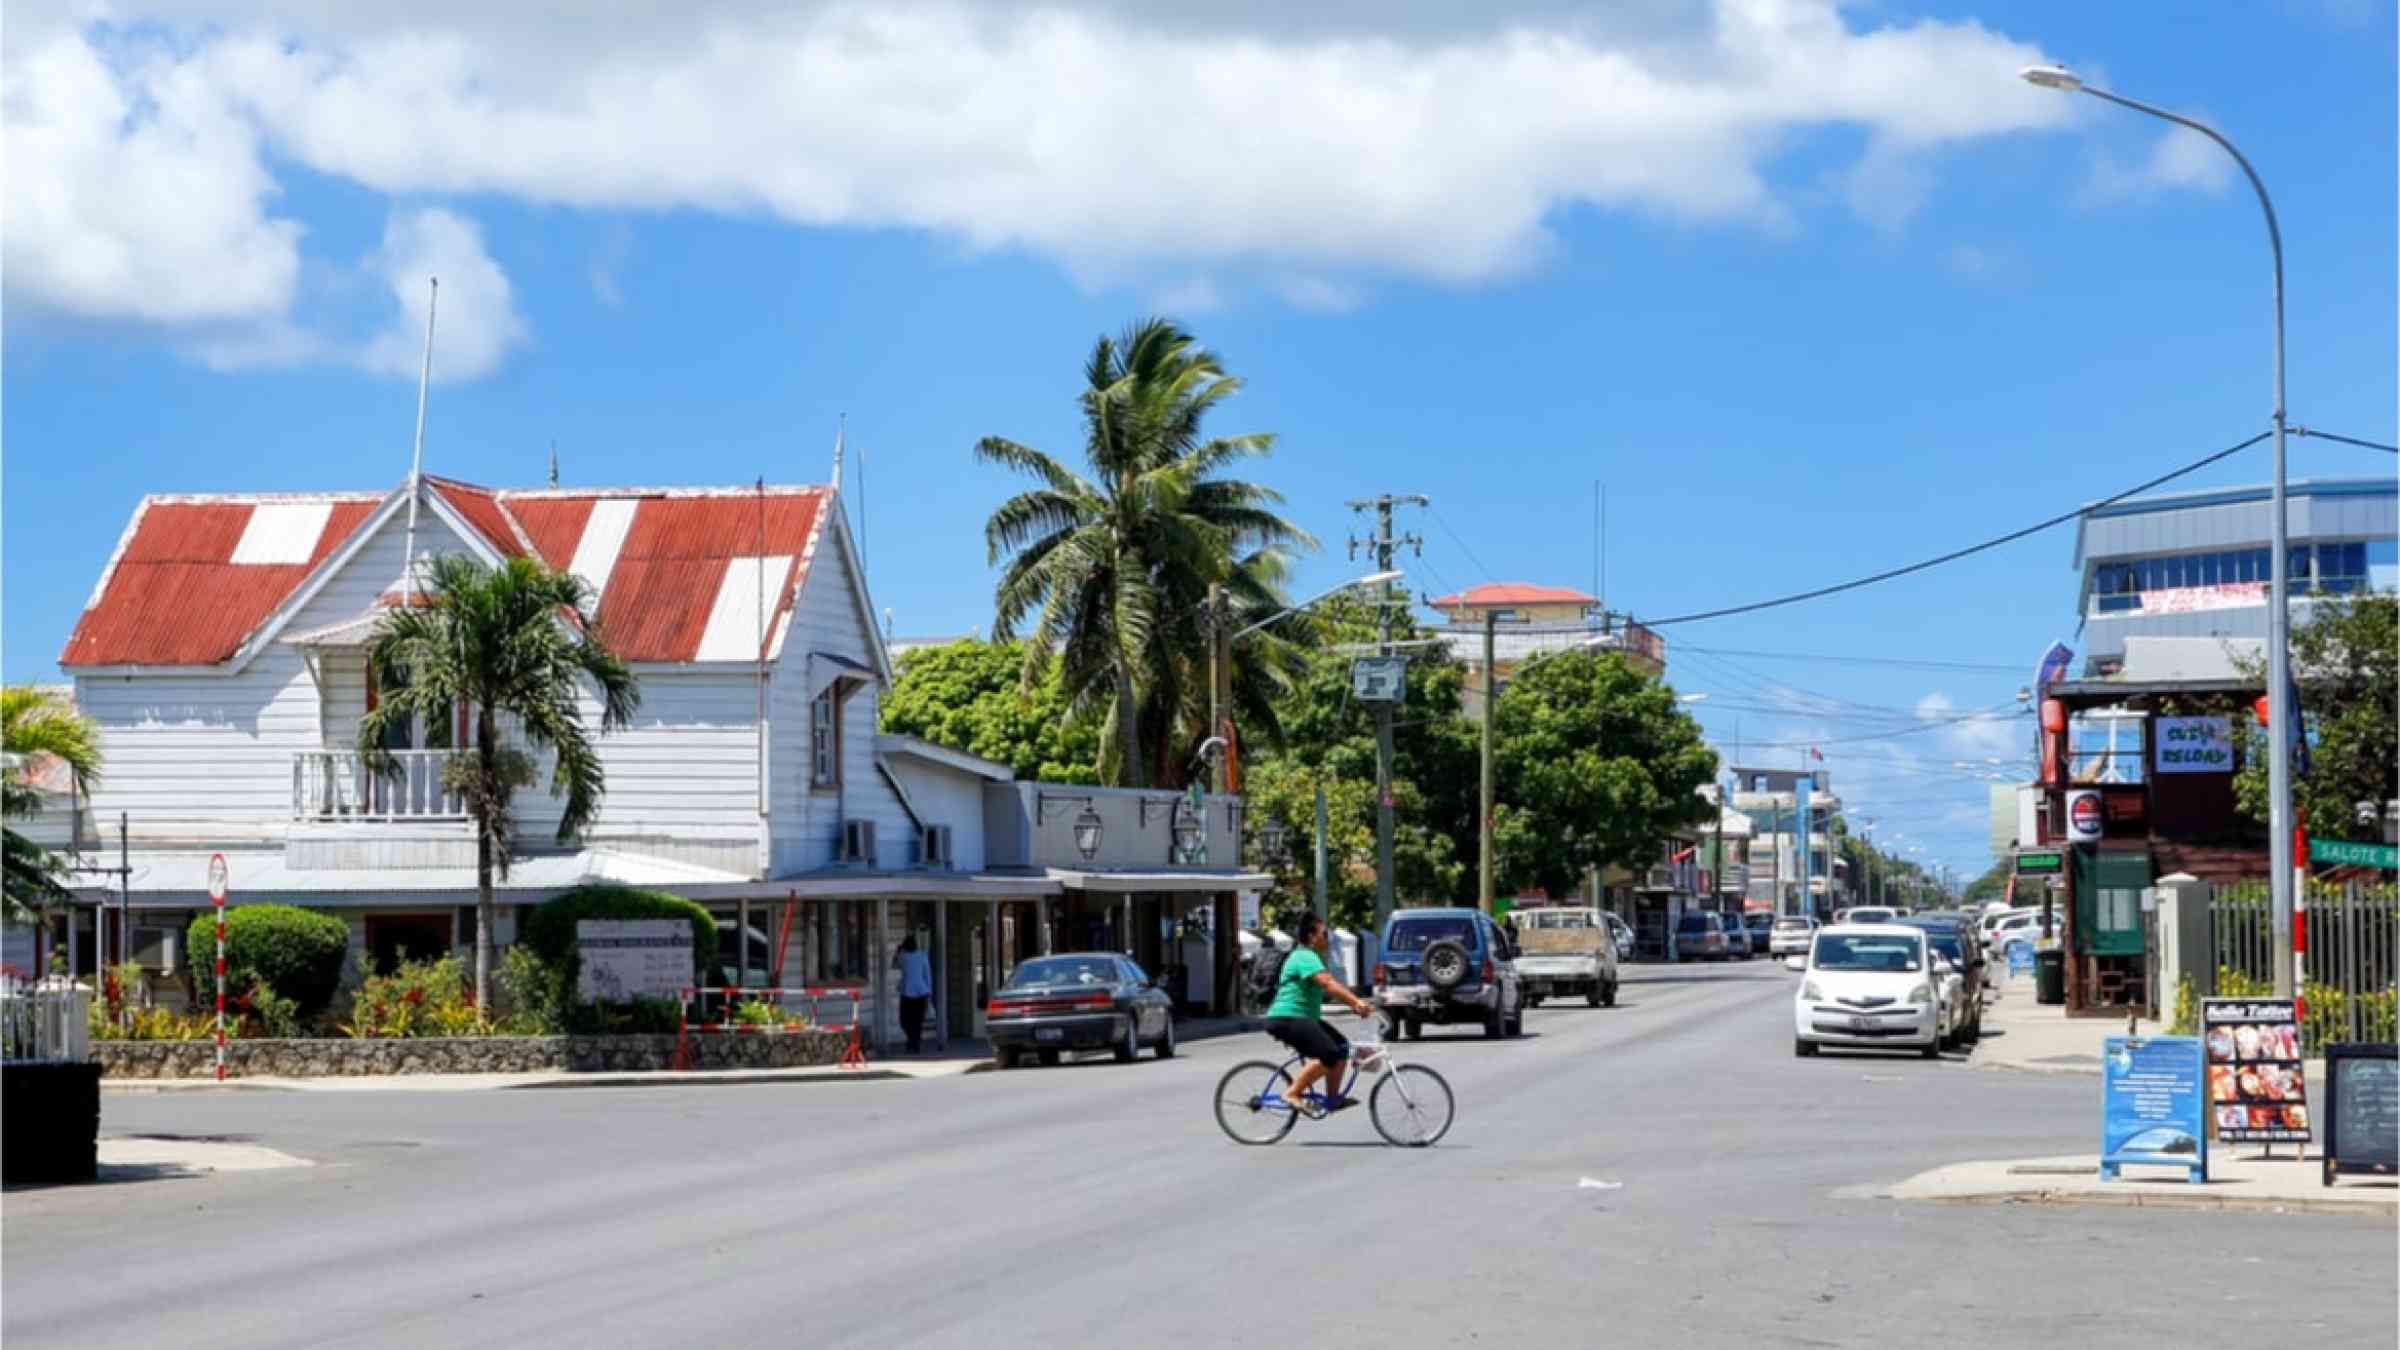 Street in Nuku'alofa on Tongatapu island, Tonga.